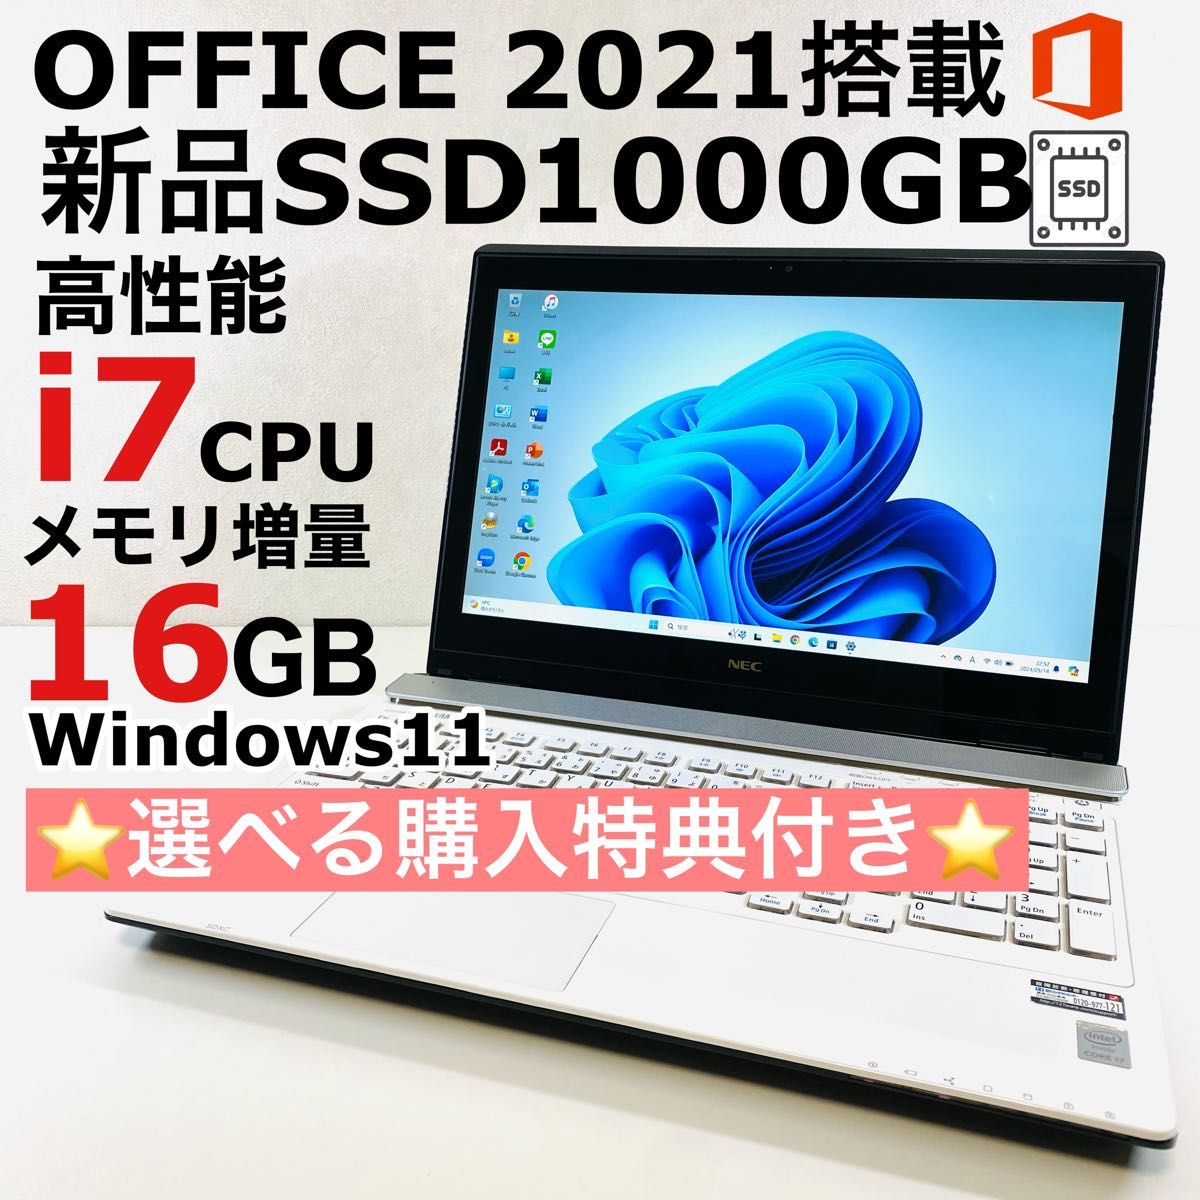 Corei7 NEC メモリ16GB ノートパソコン Windows11 SSD 1TB オフィス付き タッチパネル ブルーレイ